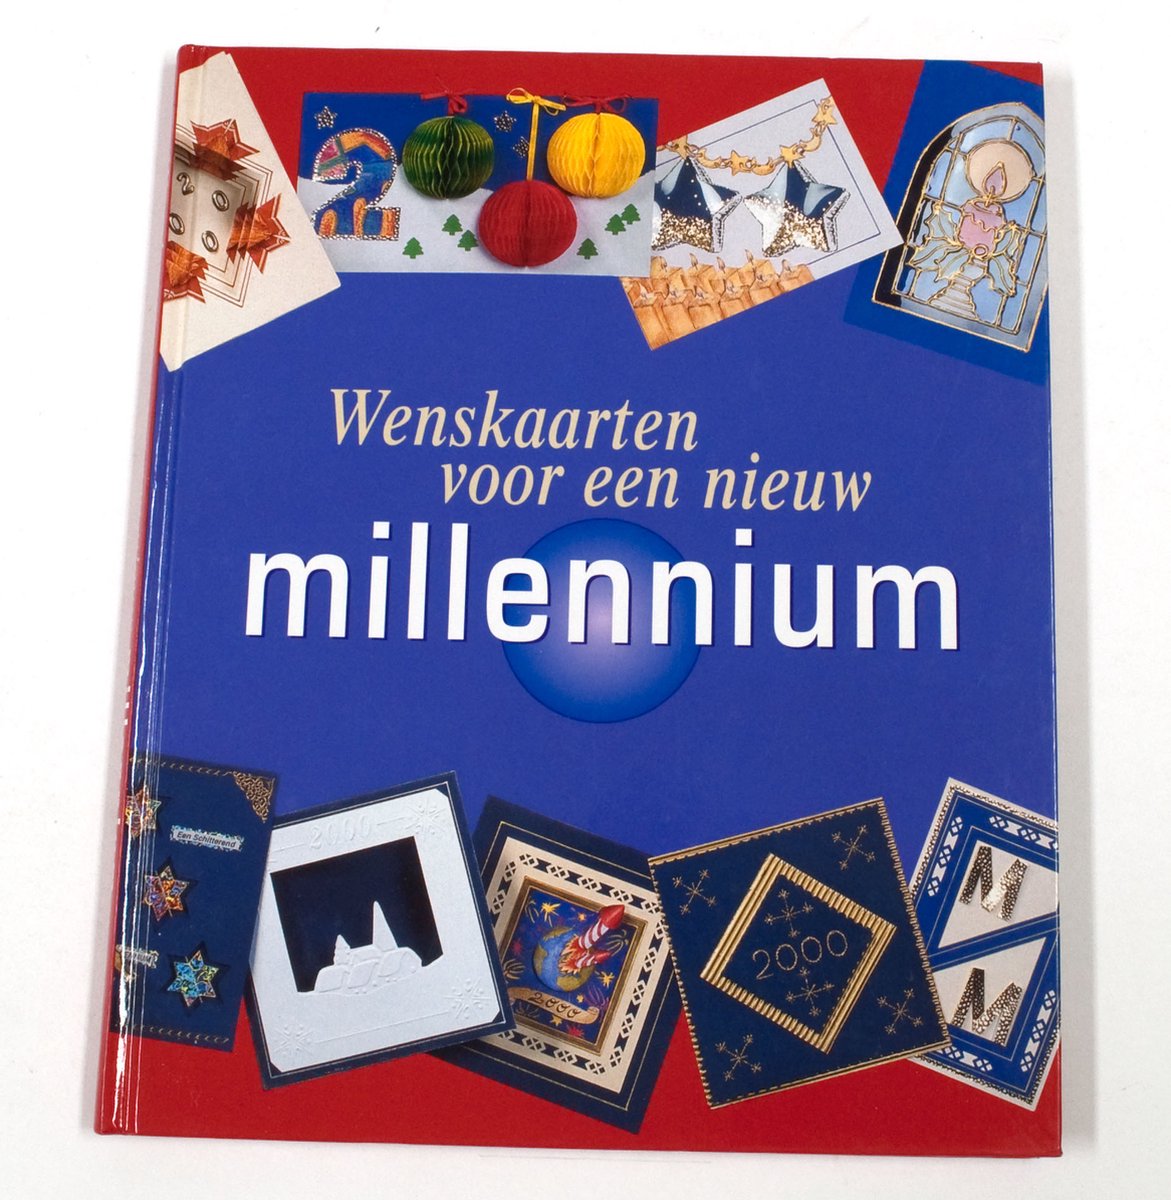 Wenskaarten voor een nieuw millennium